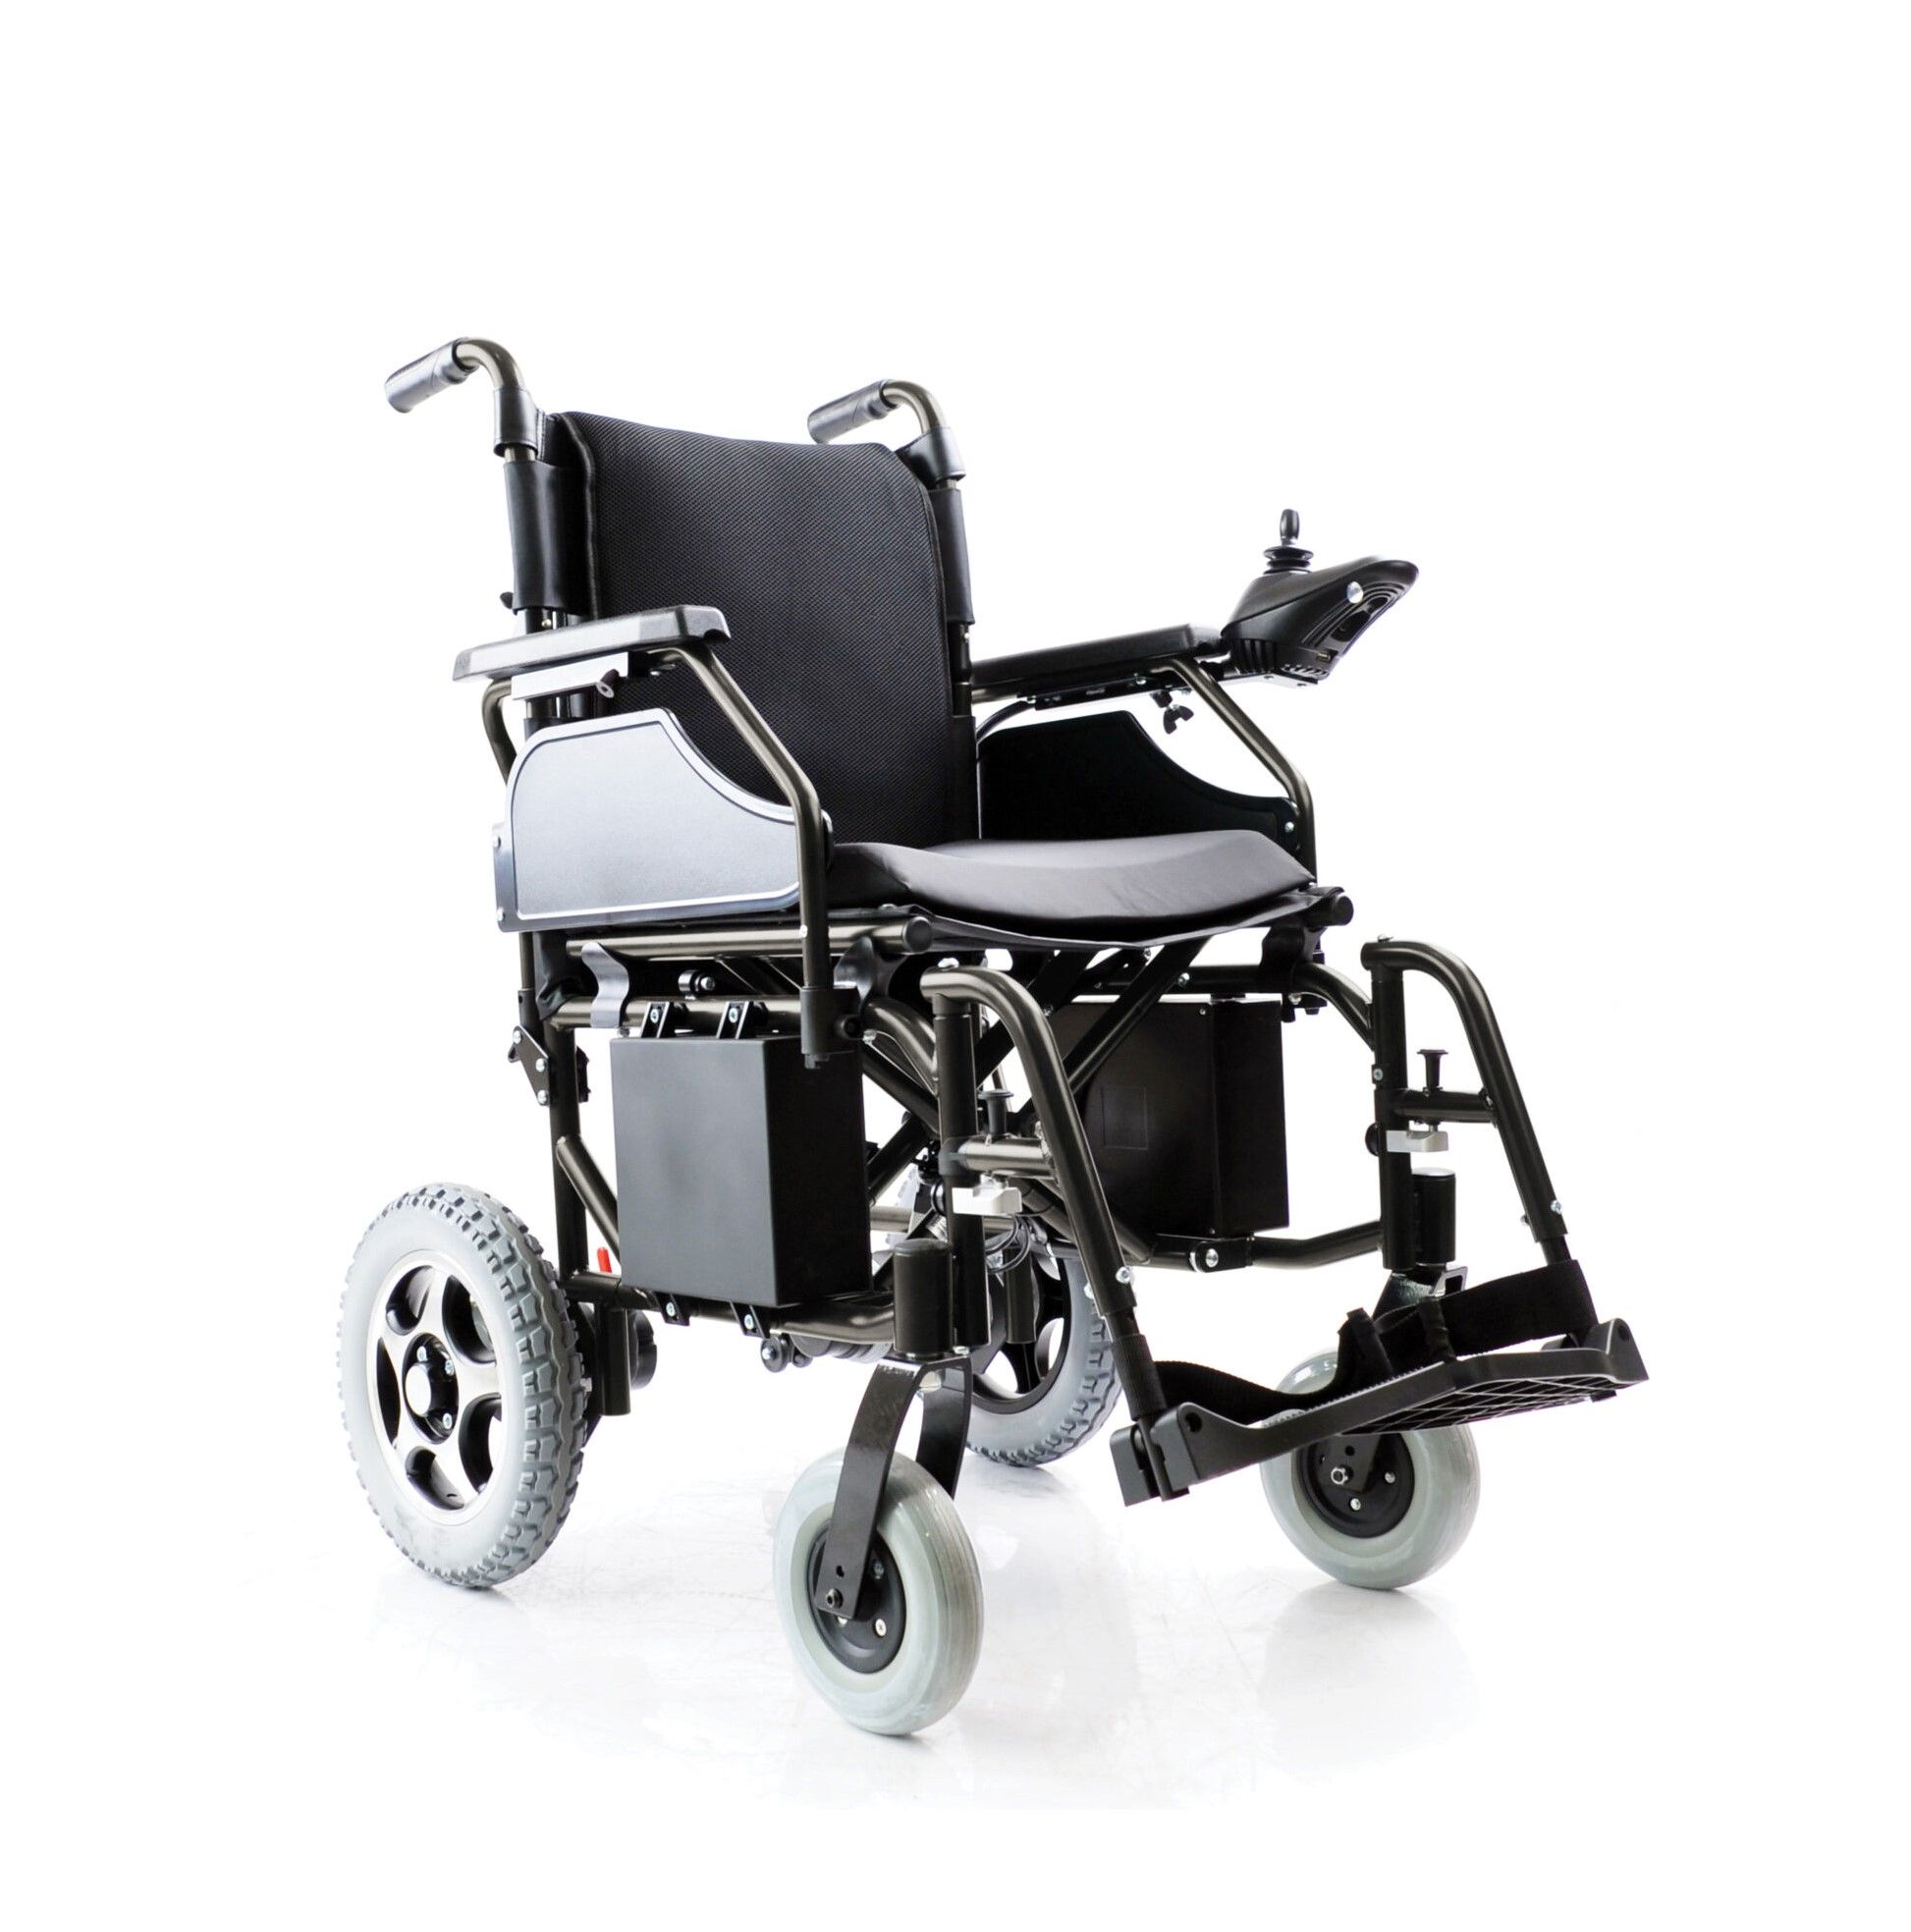 Ηλεκτροκίνητο Αναπηρικό Αμαξίδιο “HERMES II”